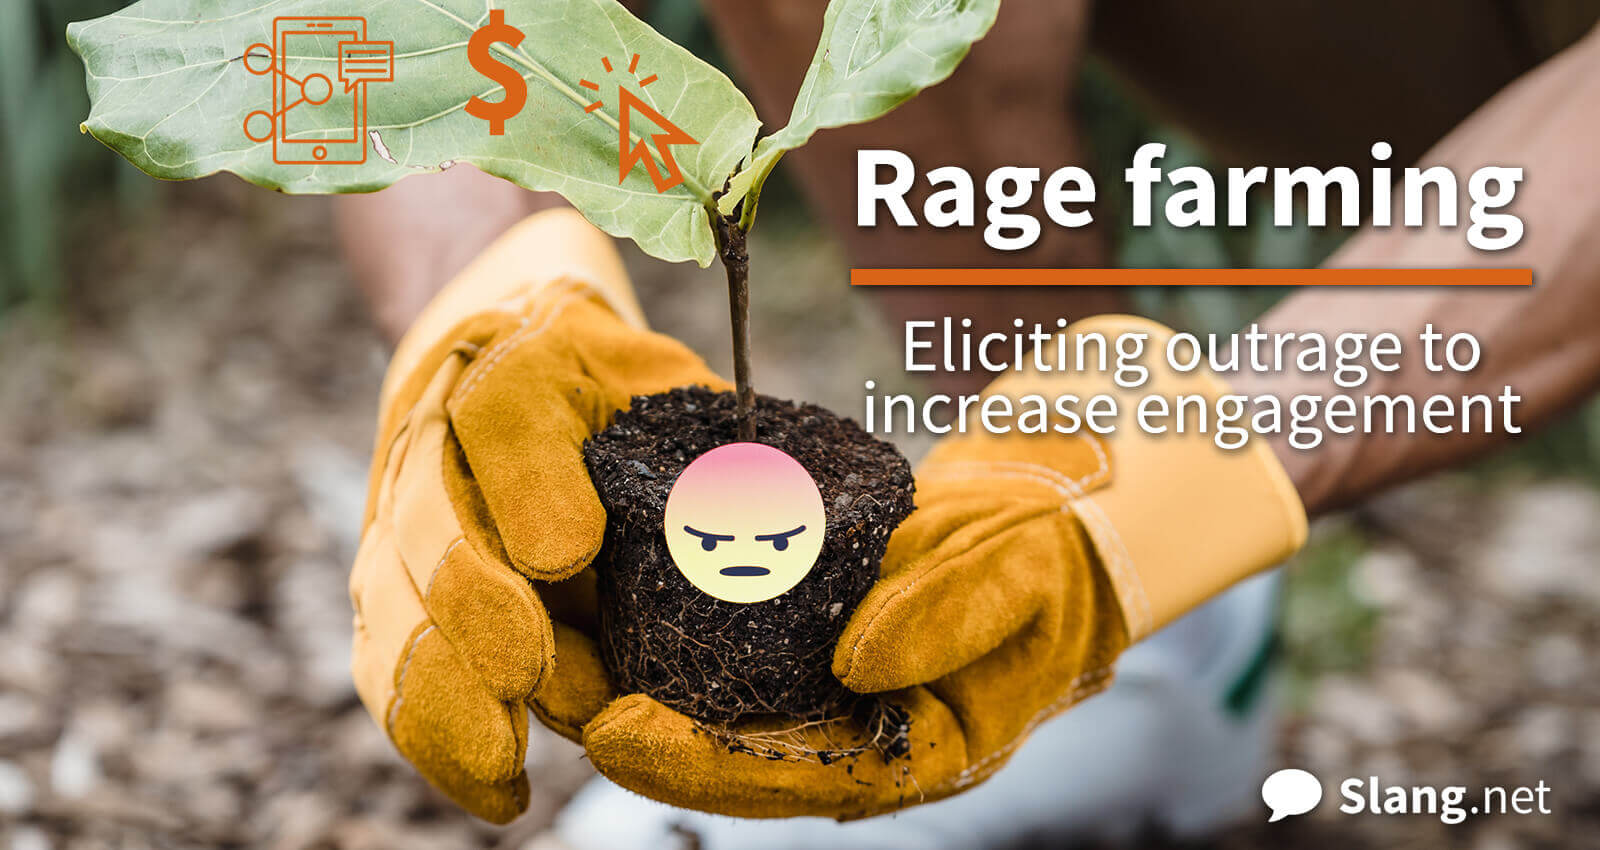 Rage farming involves planting seeds of outrage to reap clicks, shares, revenue, etc.